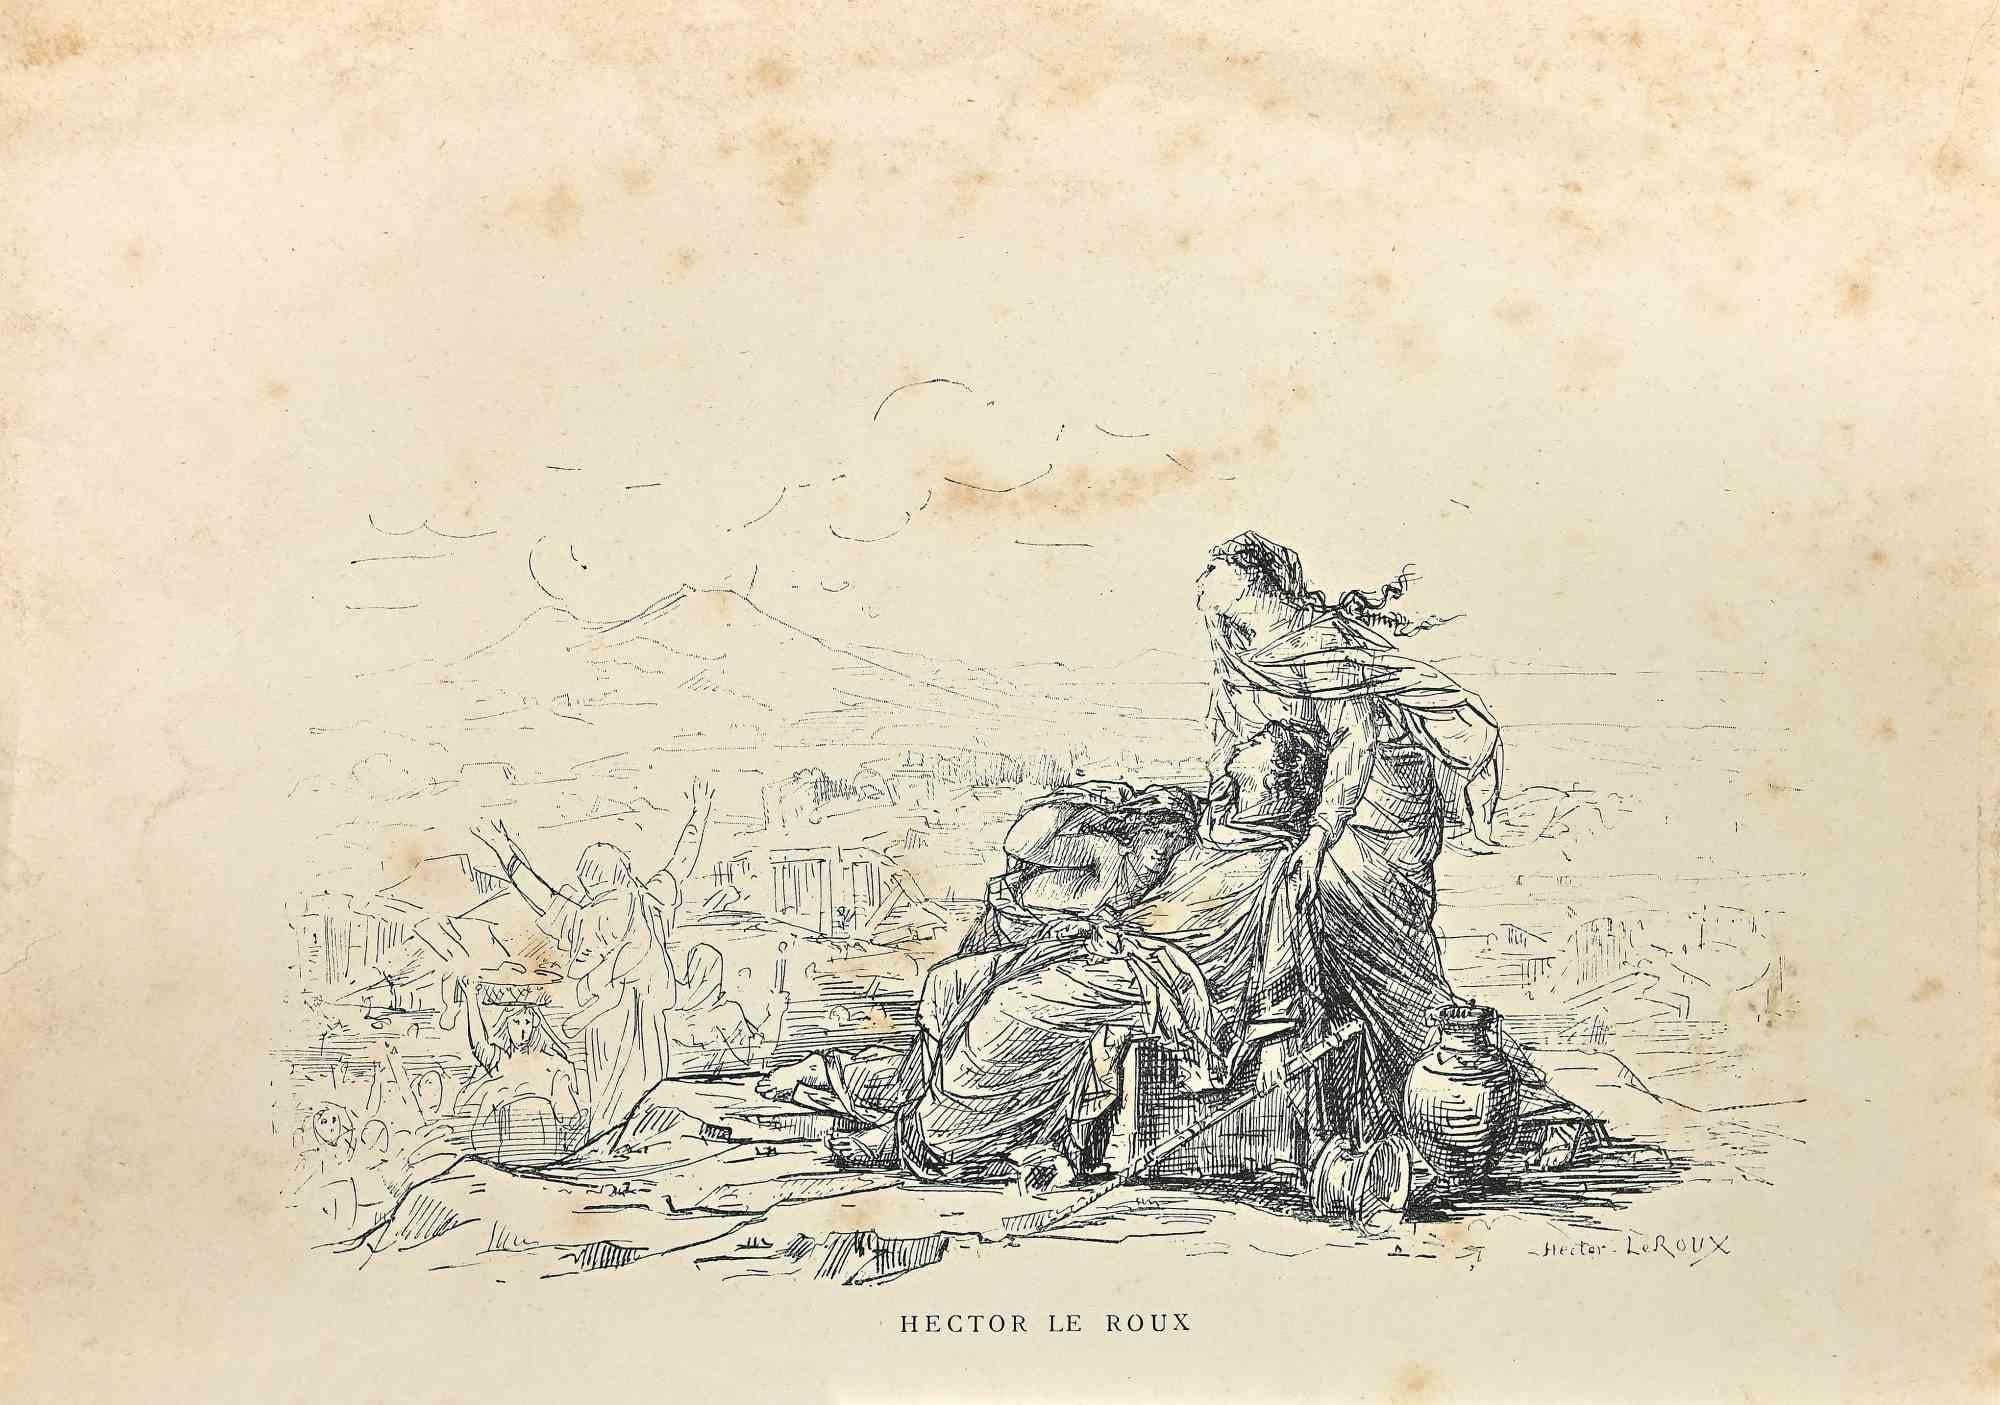 Desolation ist eine Lithographie von Hector Le Roux aus dem späten 19. Jahrhundert.

Gute Bedingungen.

Signiert auf der Platte.

Das Kunstwerk wird mit weichen Strichen in einer ausgewogenen Komposition dargestellt.